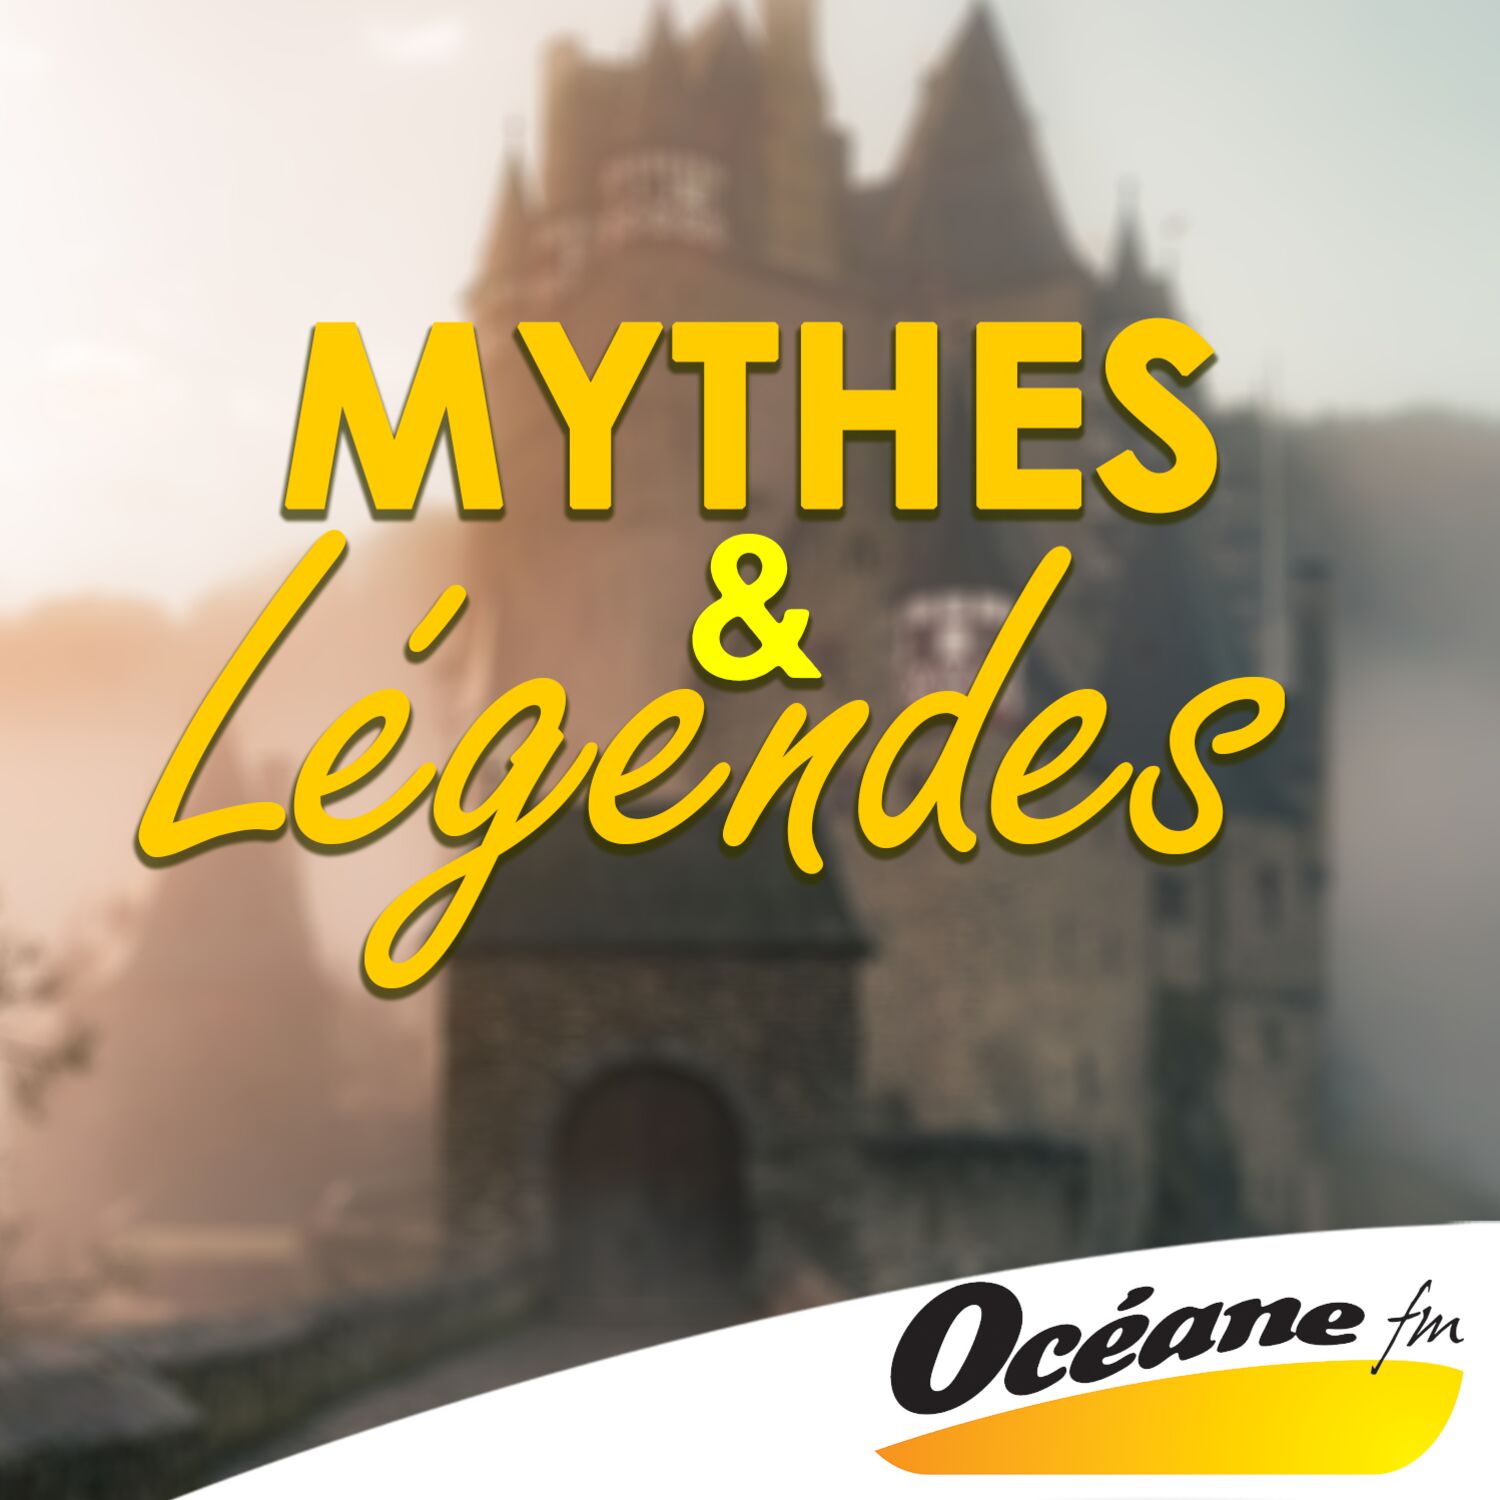 MYTHES ET LEGENDES